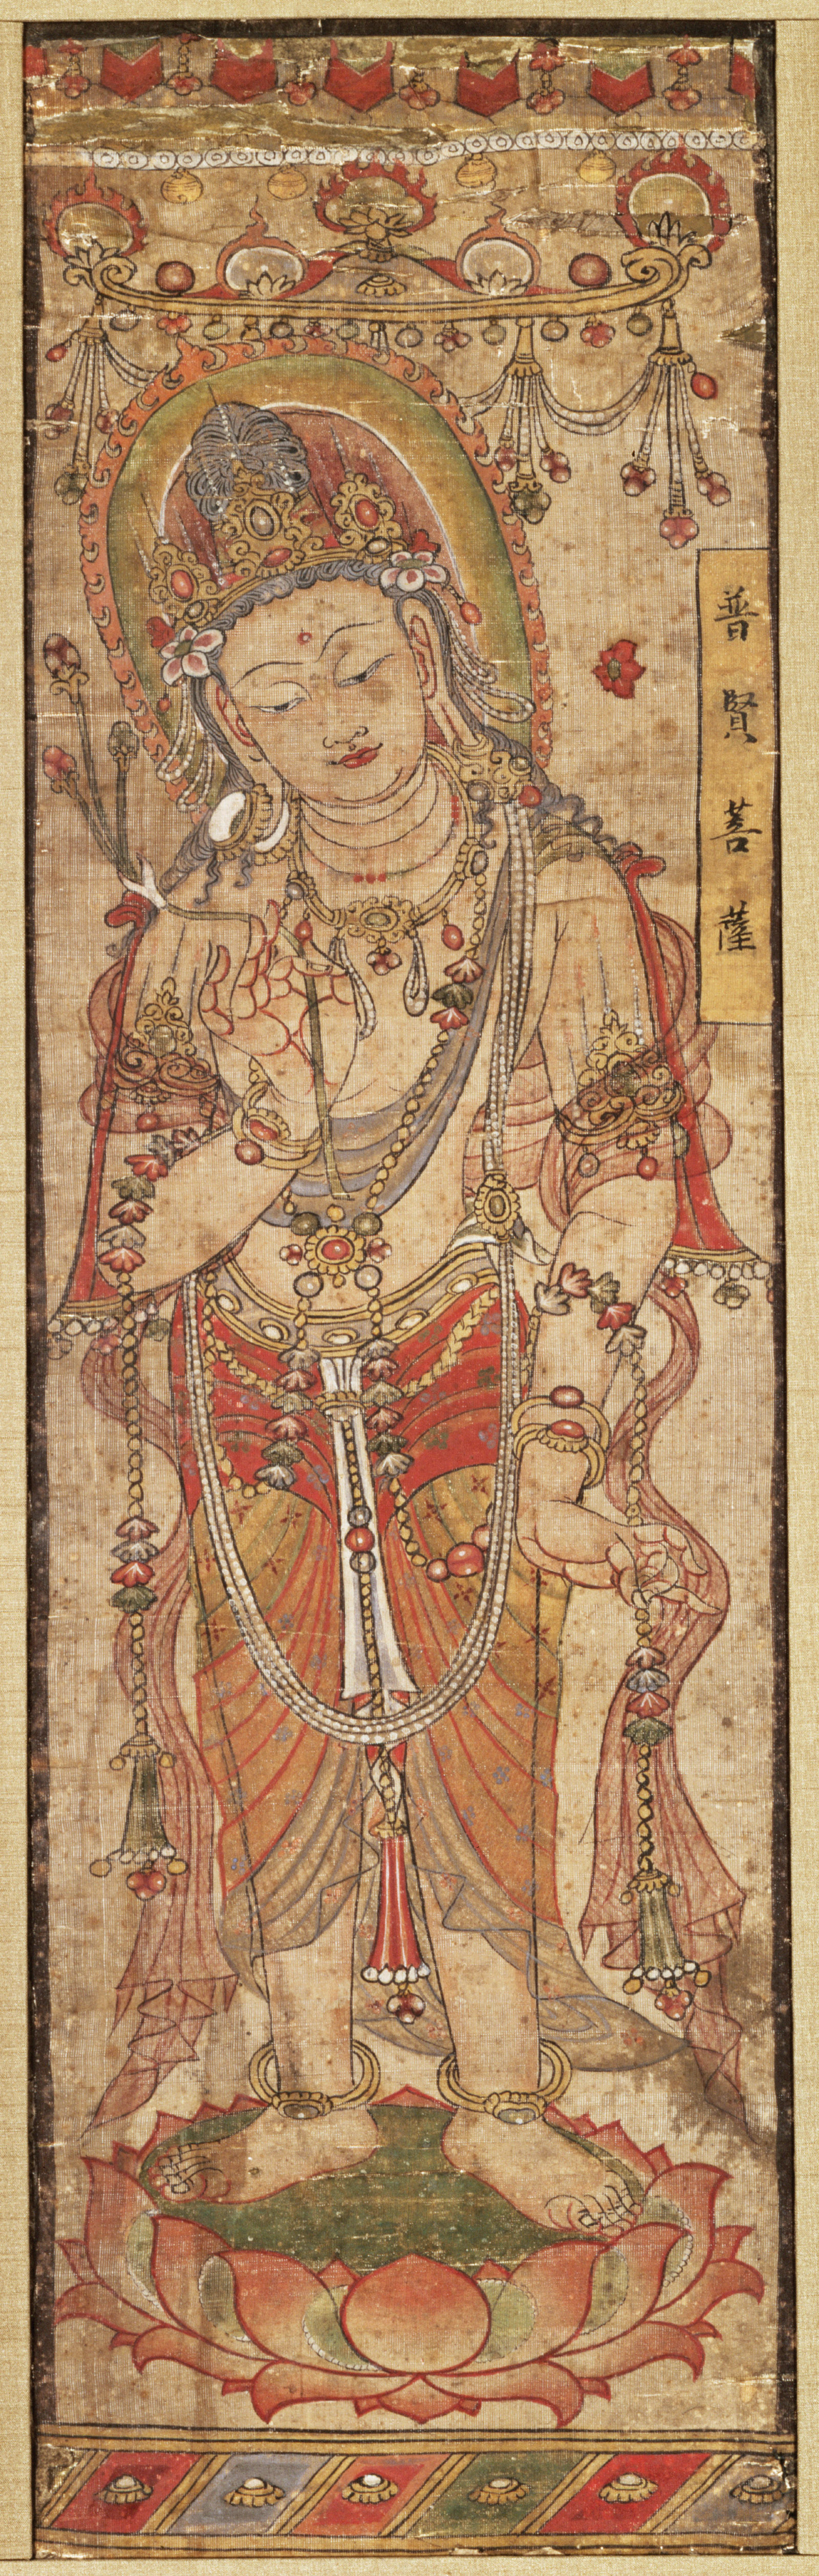 Bodhisattva Samantabhadra; painting on silk from the Mogao Caves in Jiuquan, China